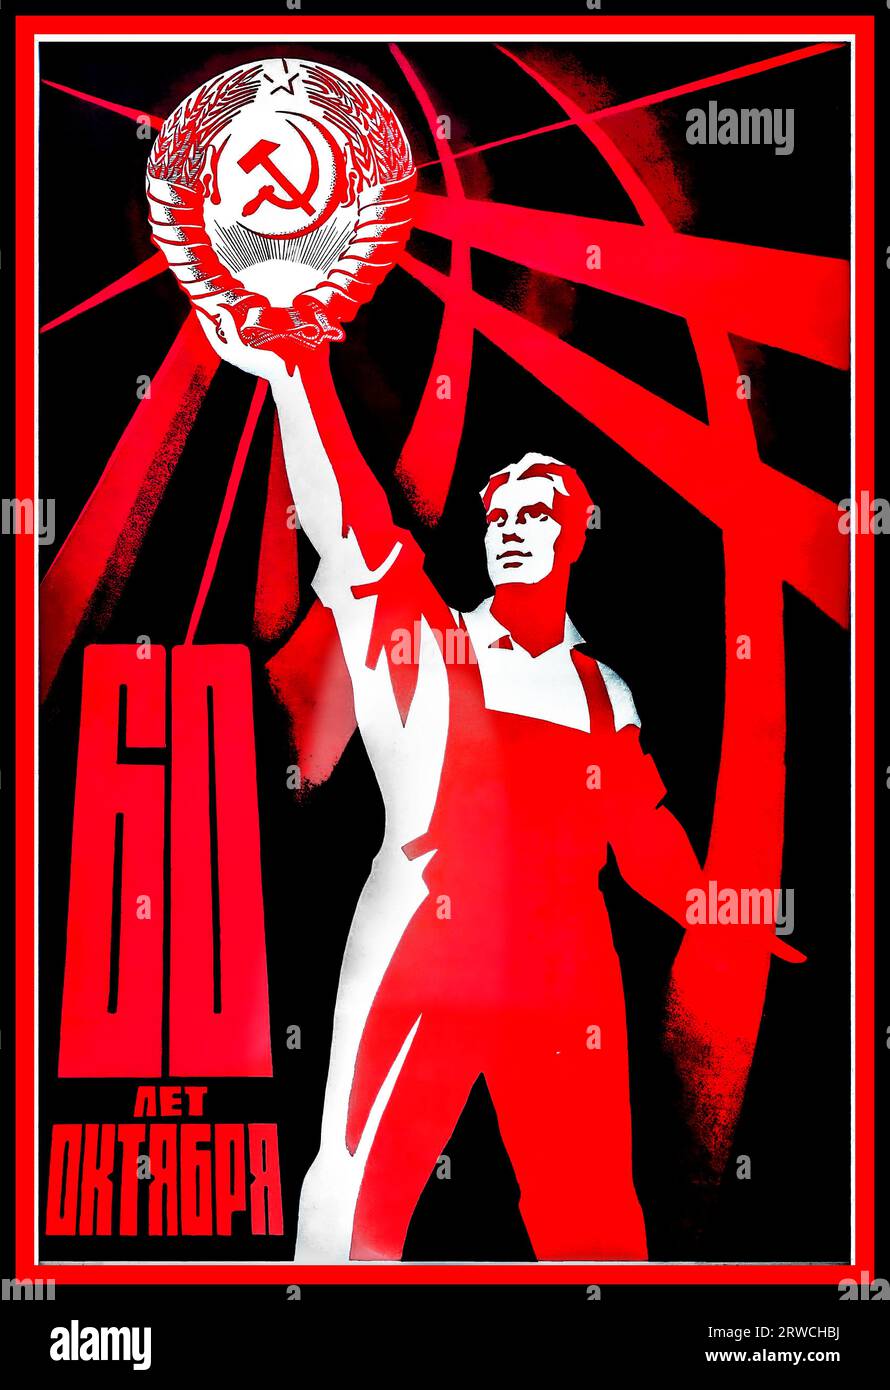 Poster di propaganda sovietica intitolato 60 Let Oktyabrya / 60 anni di ottobre - commemorazione di 60 anni dalla Rivoluzione d'ottobre. Il disegno mostra un lavoratore dell'URSS in tuta che tiene in alto l'emblema comunista di una falce e un martello all'interno di una corona di grano sormontata dalla stella a cinque punte. Lo sfondo è rosso scuro con linee rosse curve - Russia, designer: V. Briskin, anno di stampa: 1977 Foto Stock